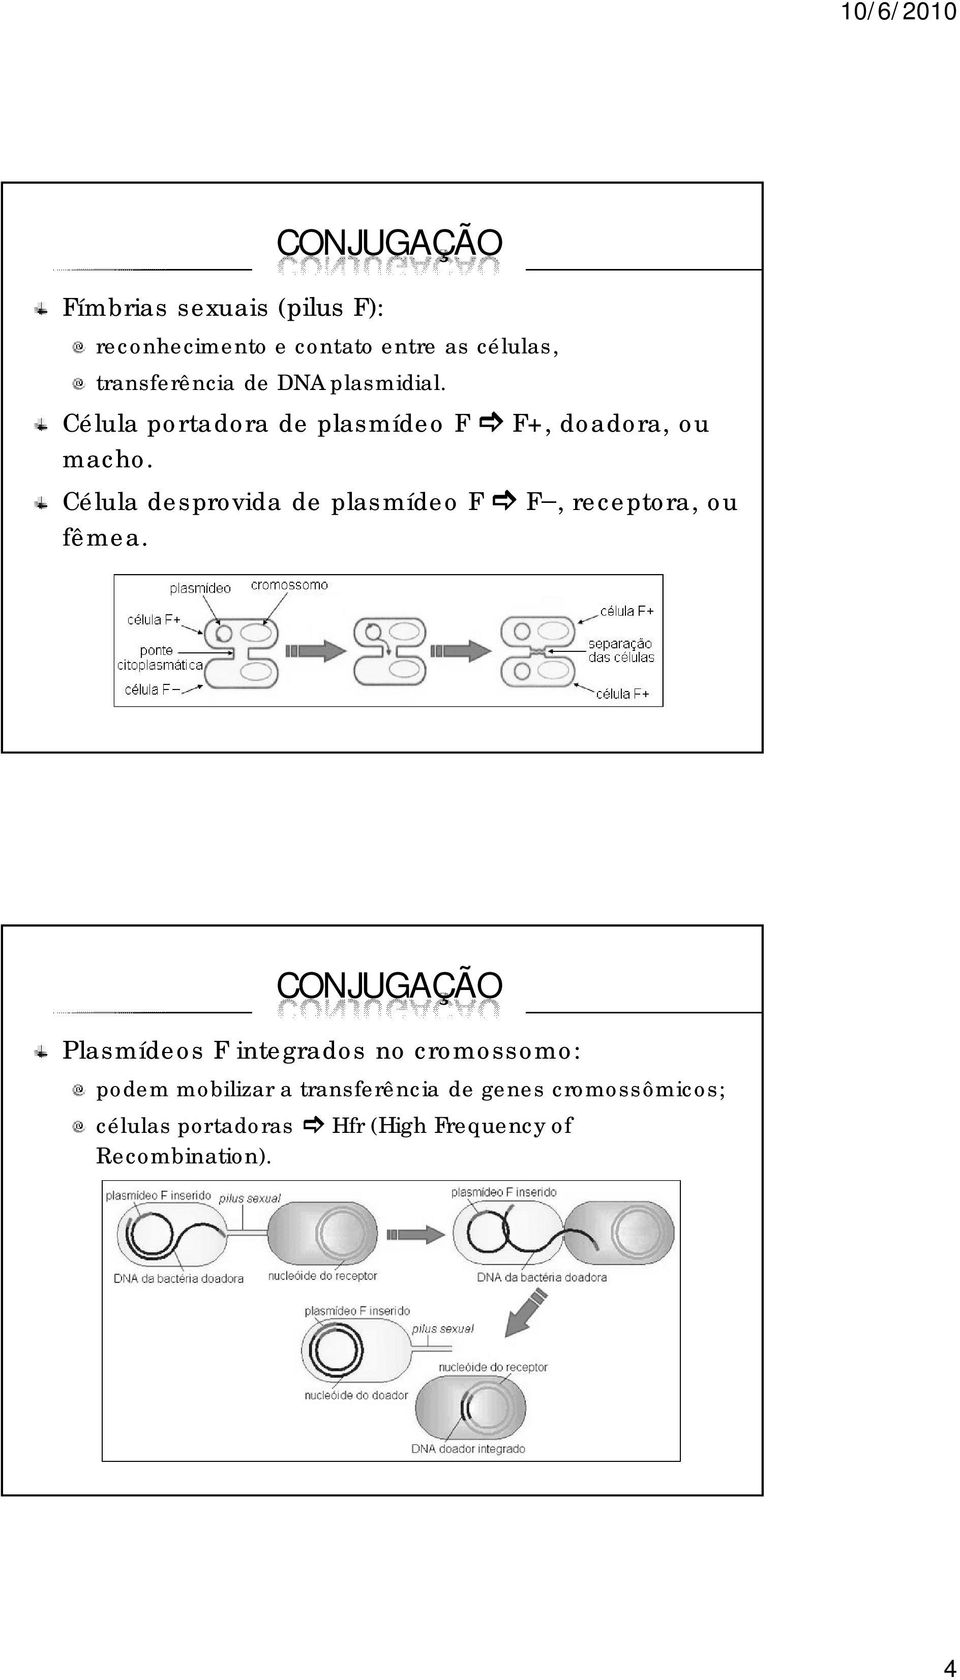 Célula desprovida de plasmídeo F F, receptora, ou fêmea.